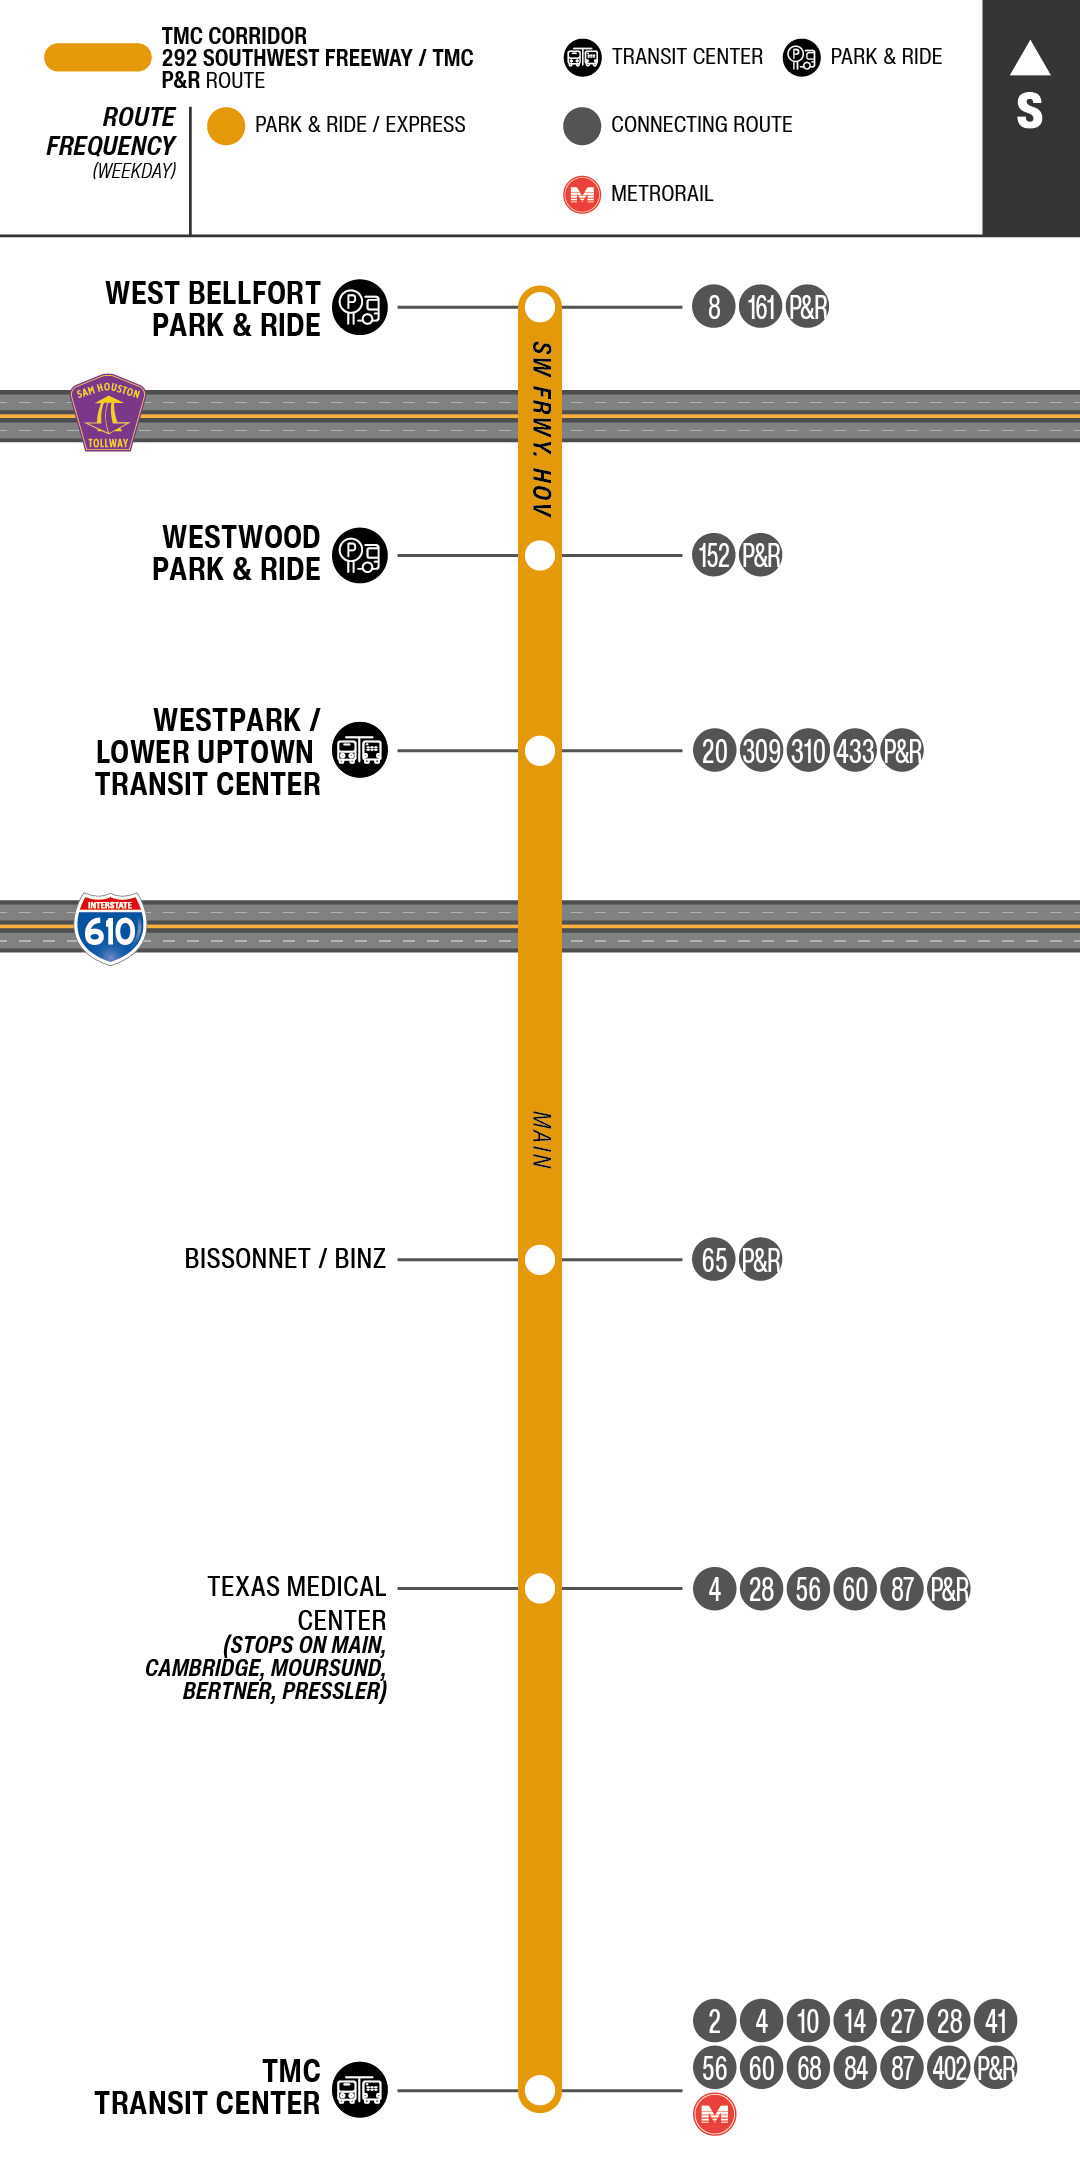 Route map for 292 Southwest Freeway / TMC Park & Ride bus